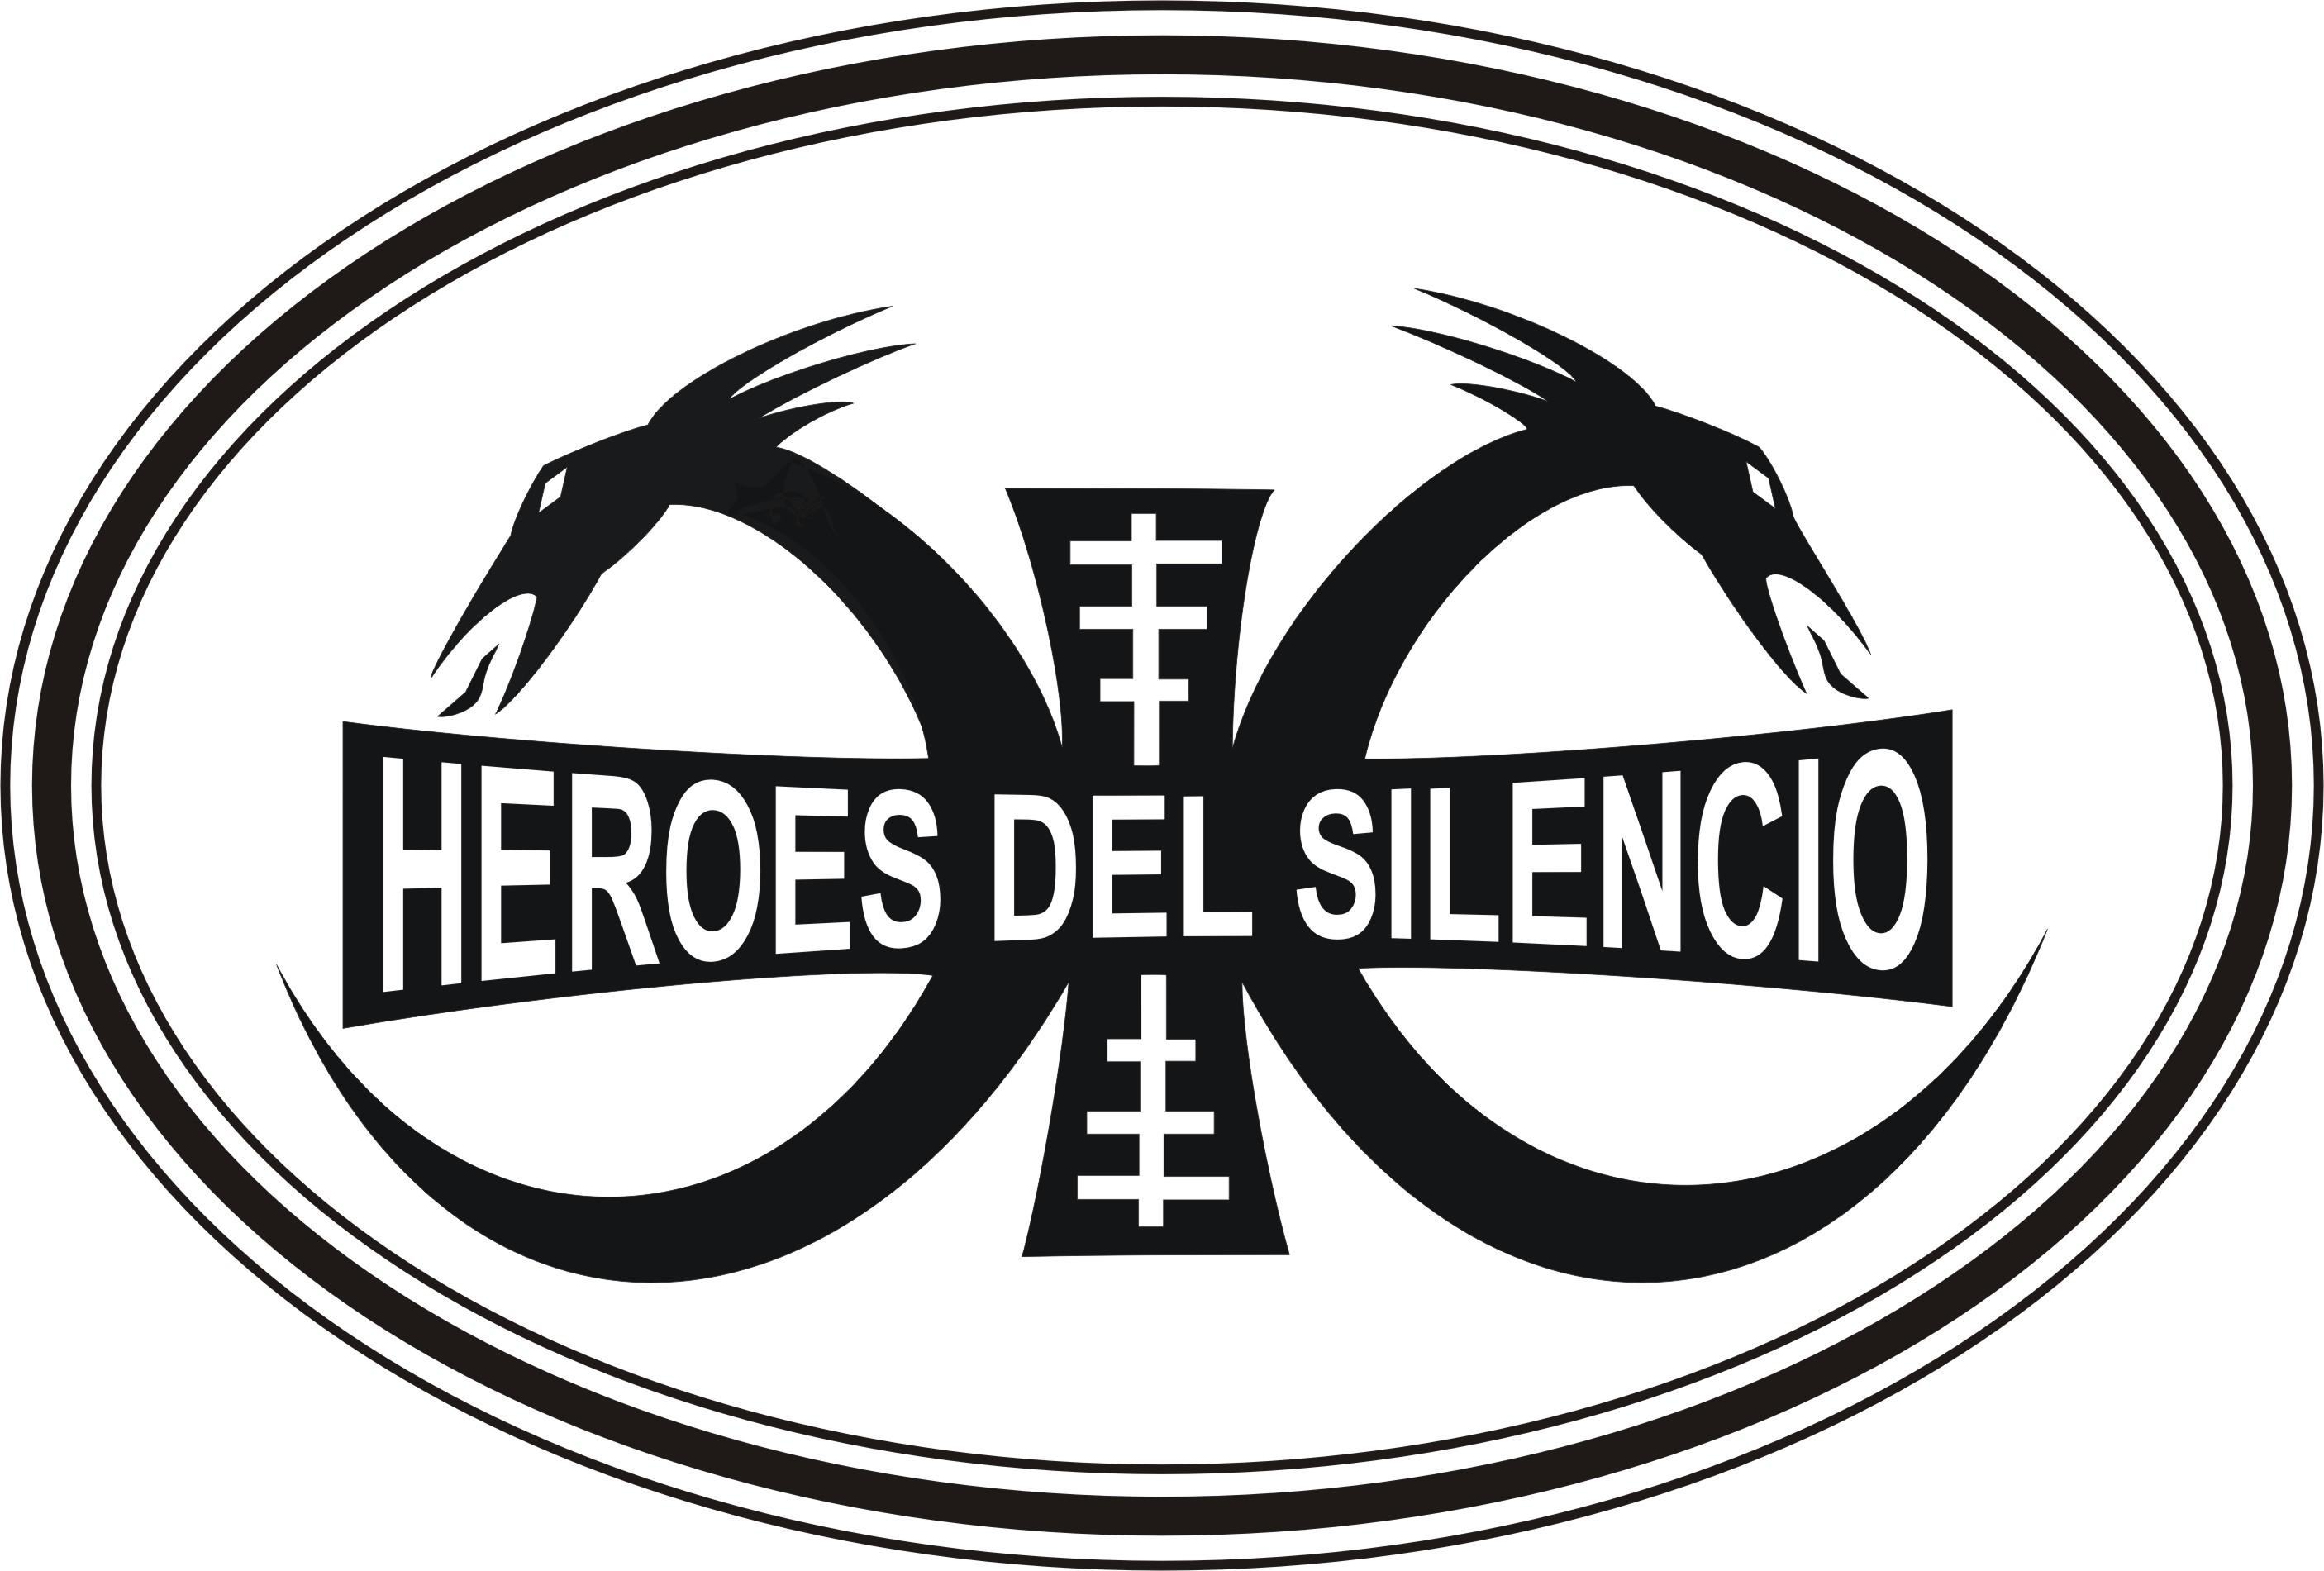 Heroes del silencio Logos